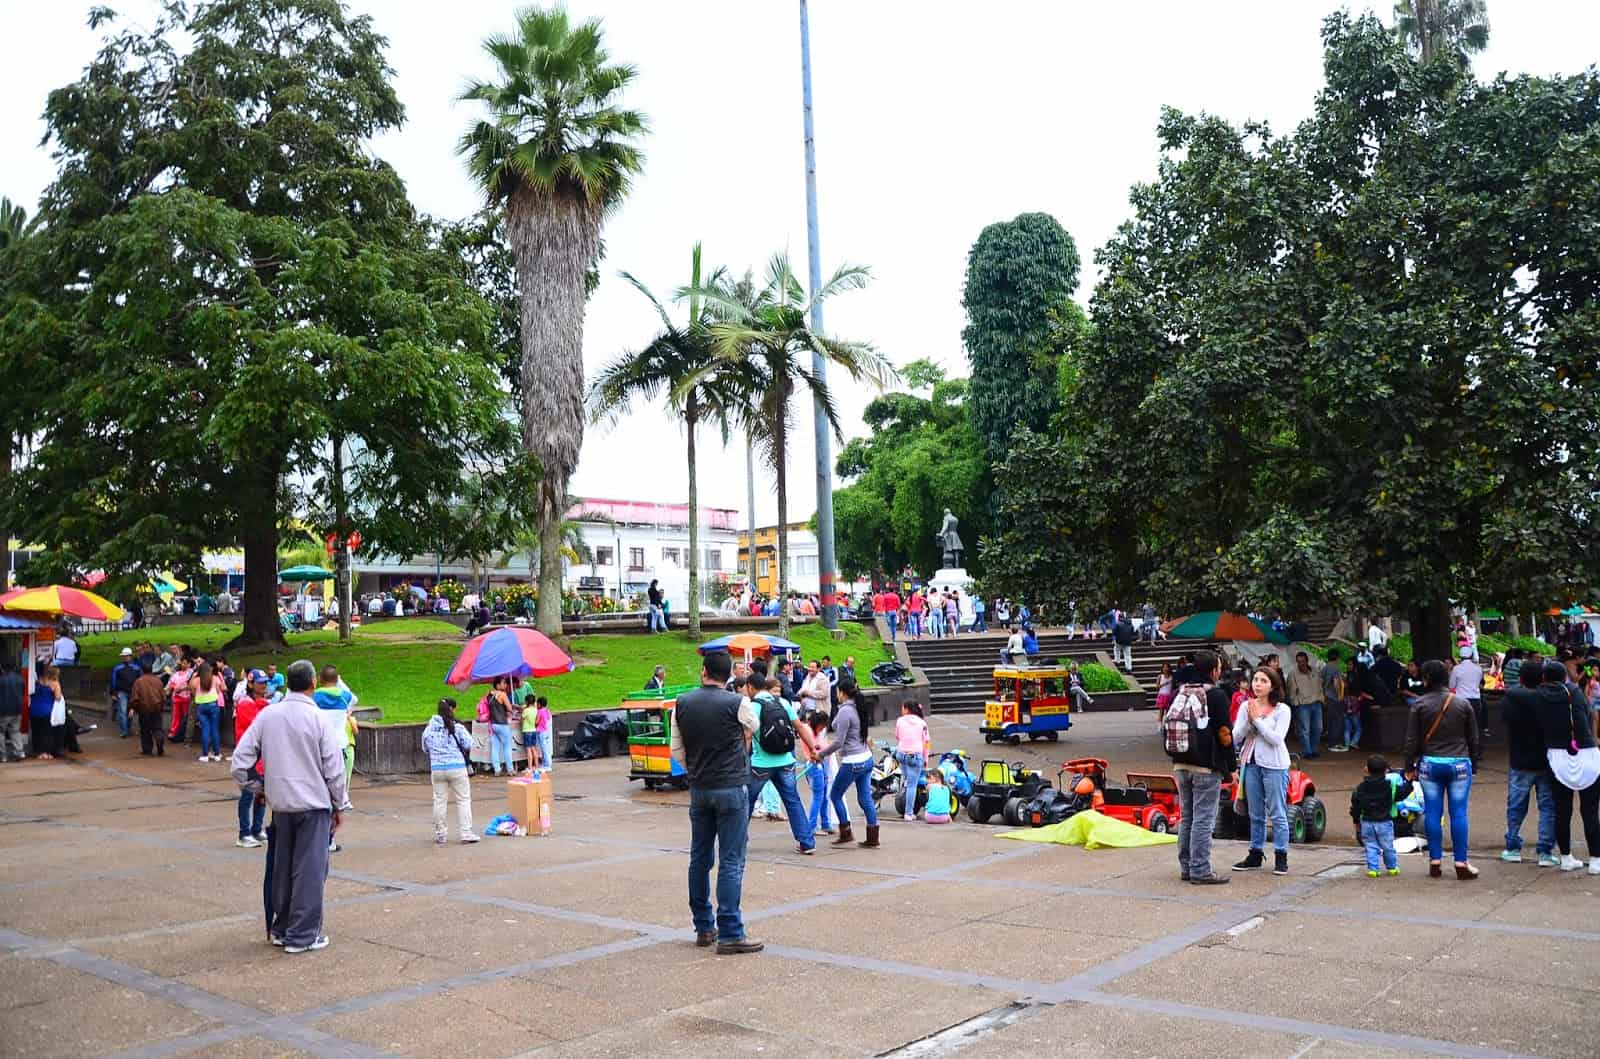 Plaza in Manizales, Caldas, Colombia